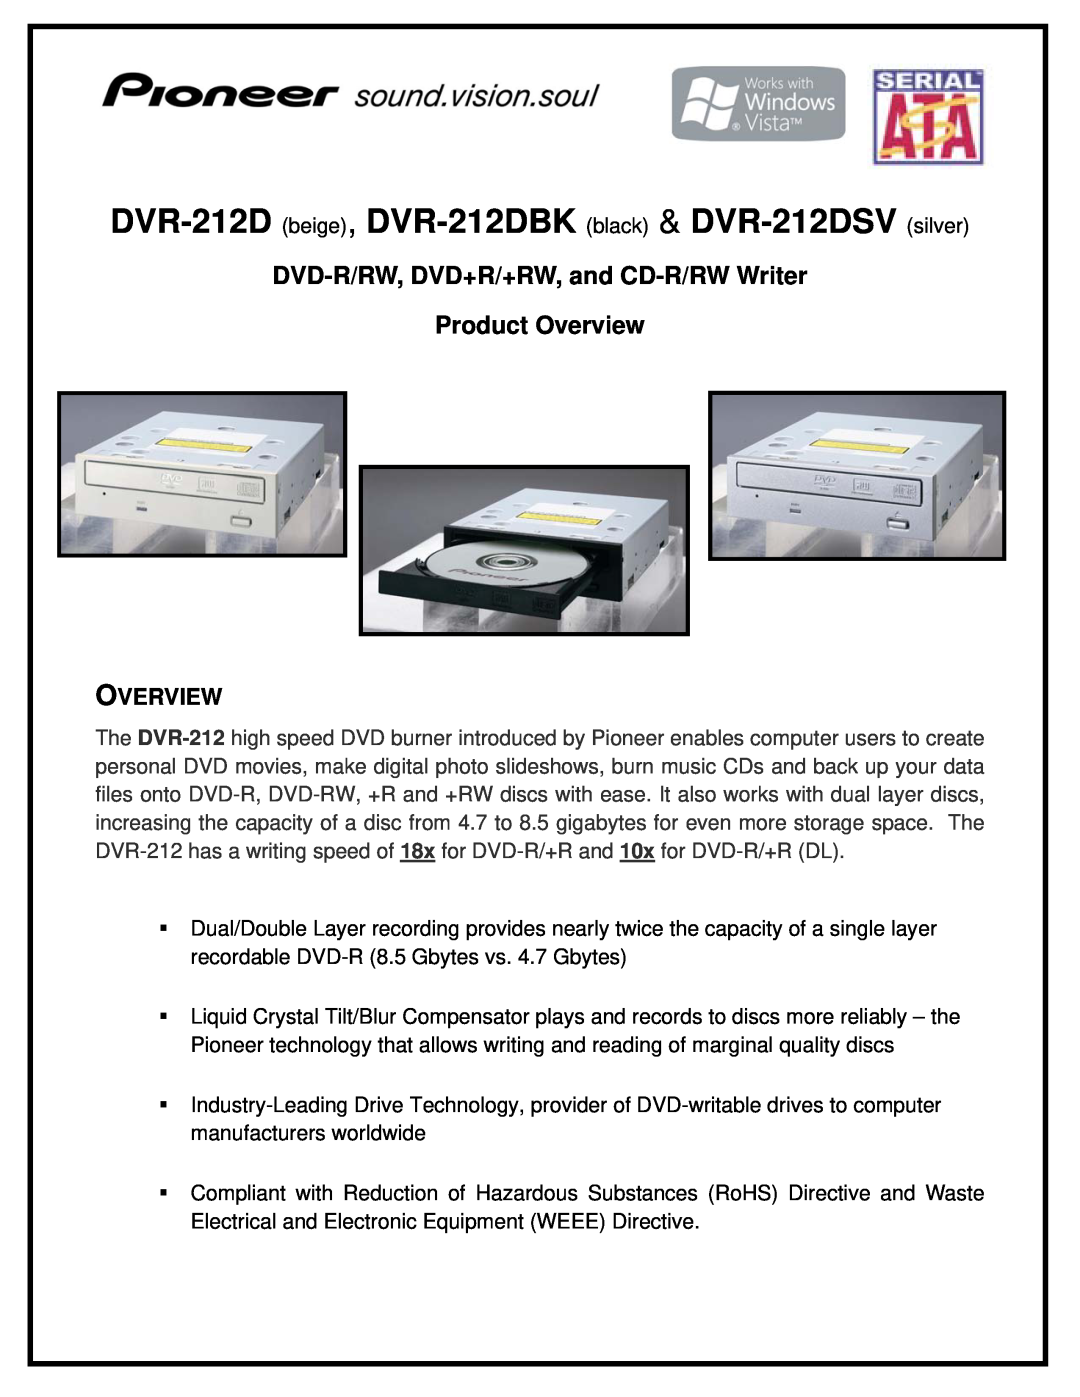 Pioneer manual DVR-212D beige, DVR-212DBK black & DVR-212DSV silver, Overview 